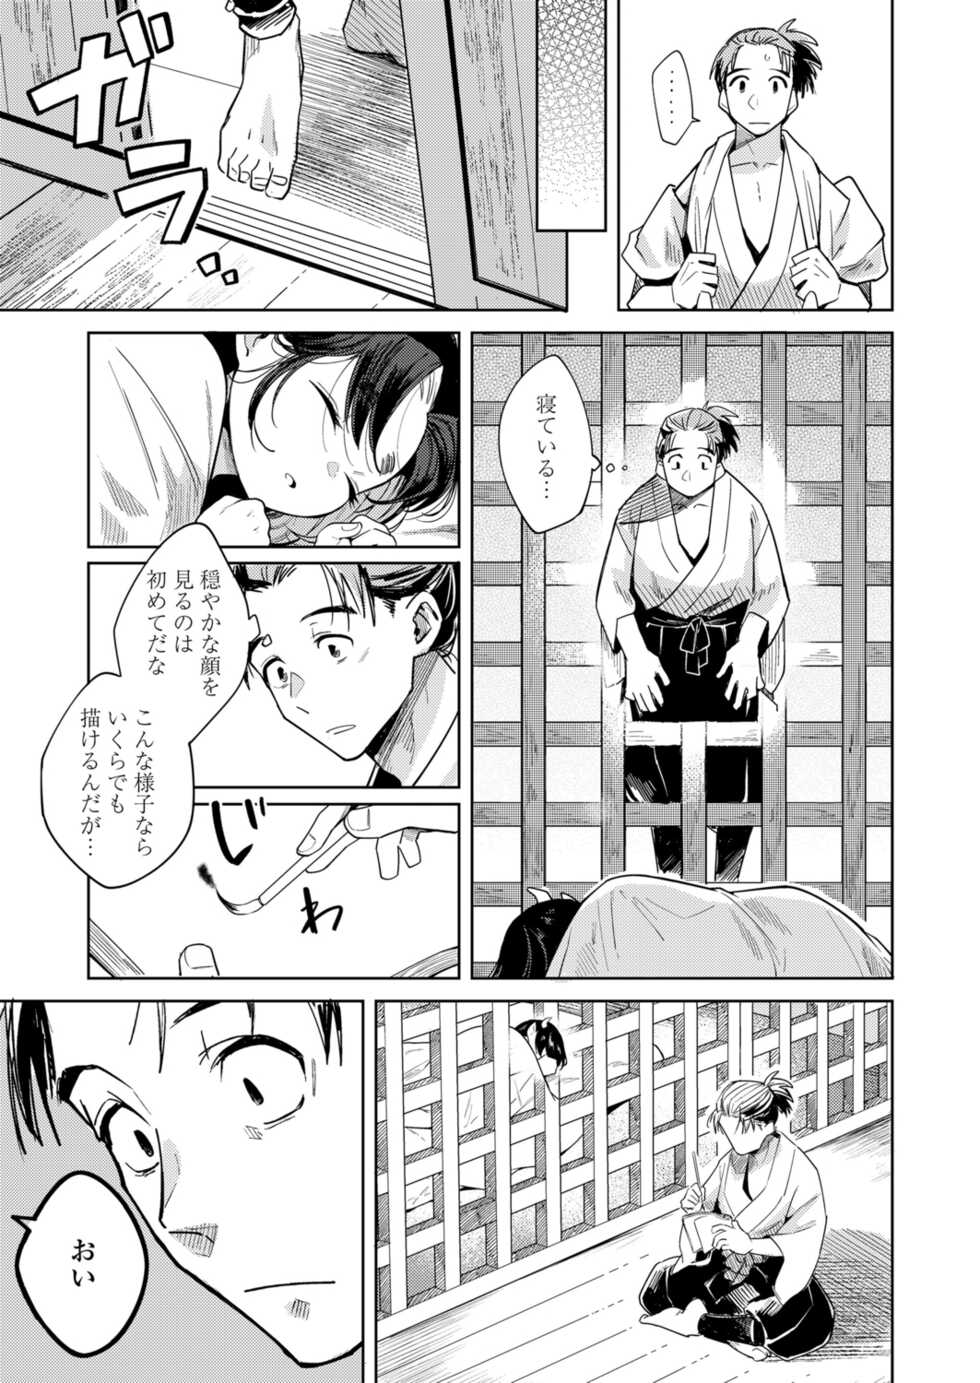 Towako 12 [Digital] - Page 15